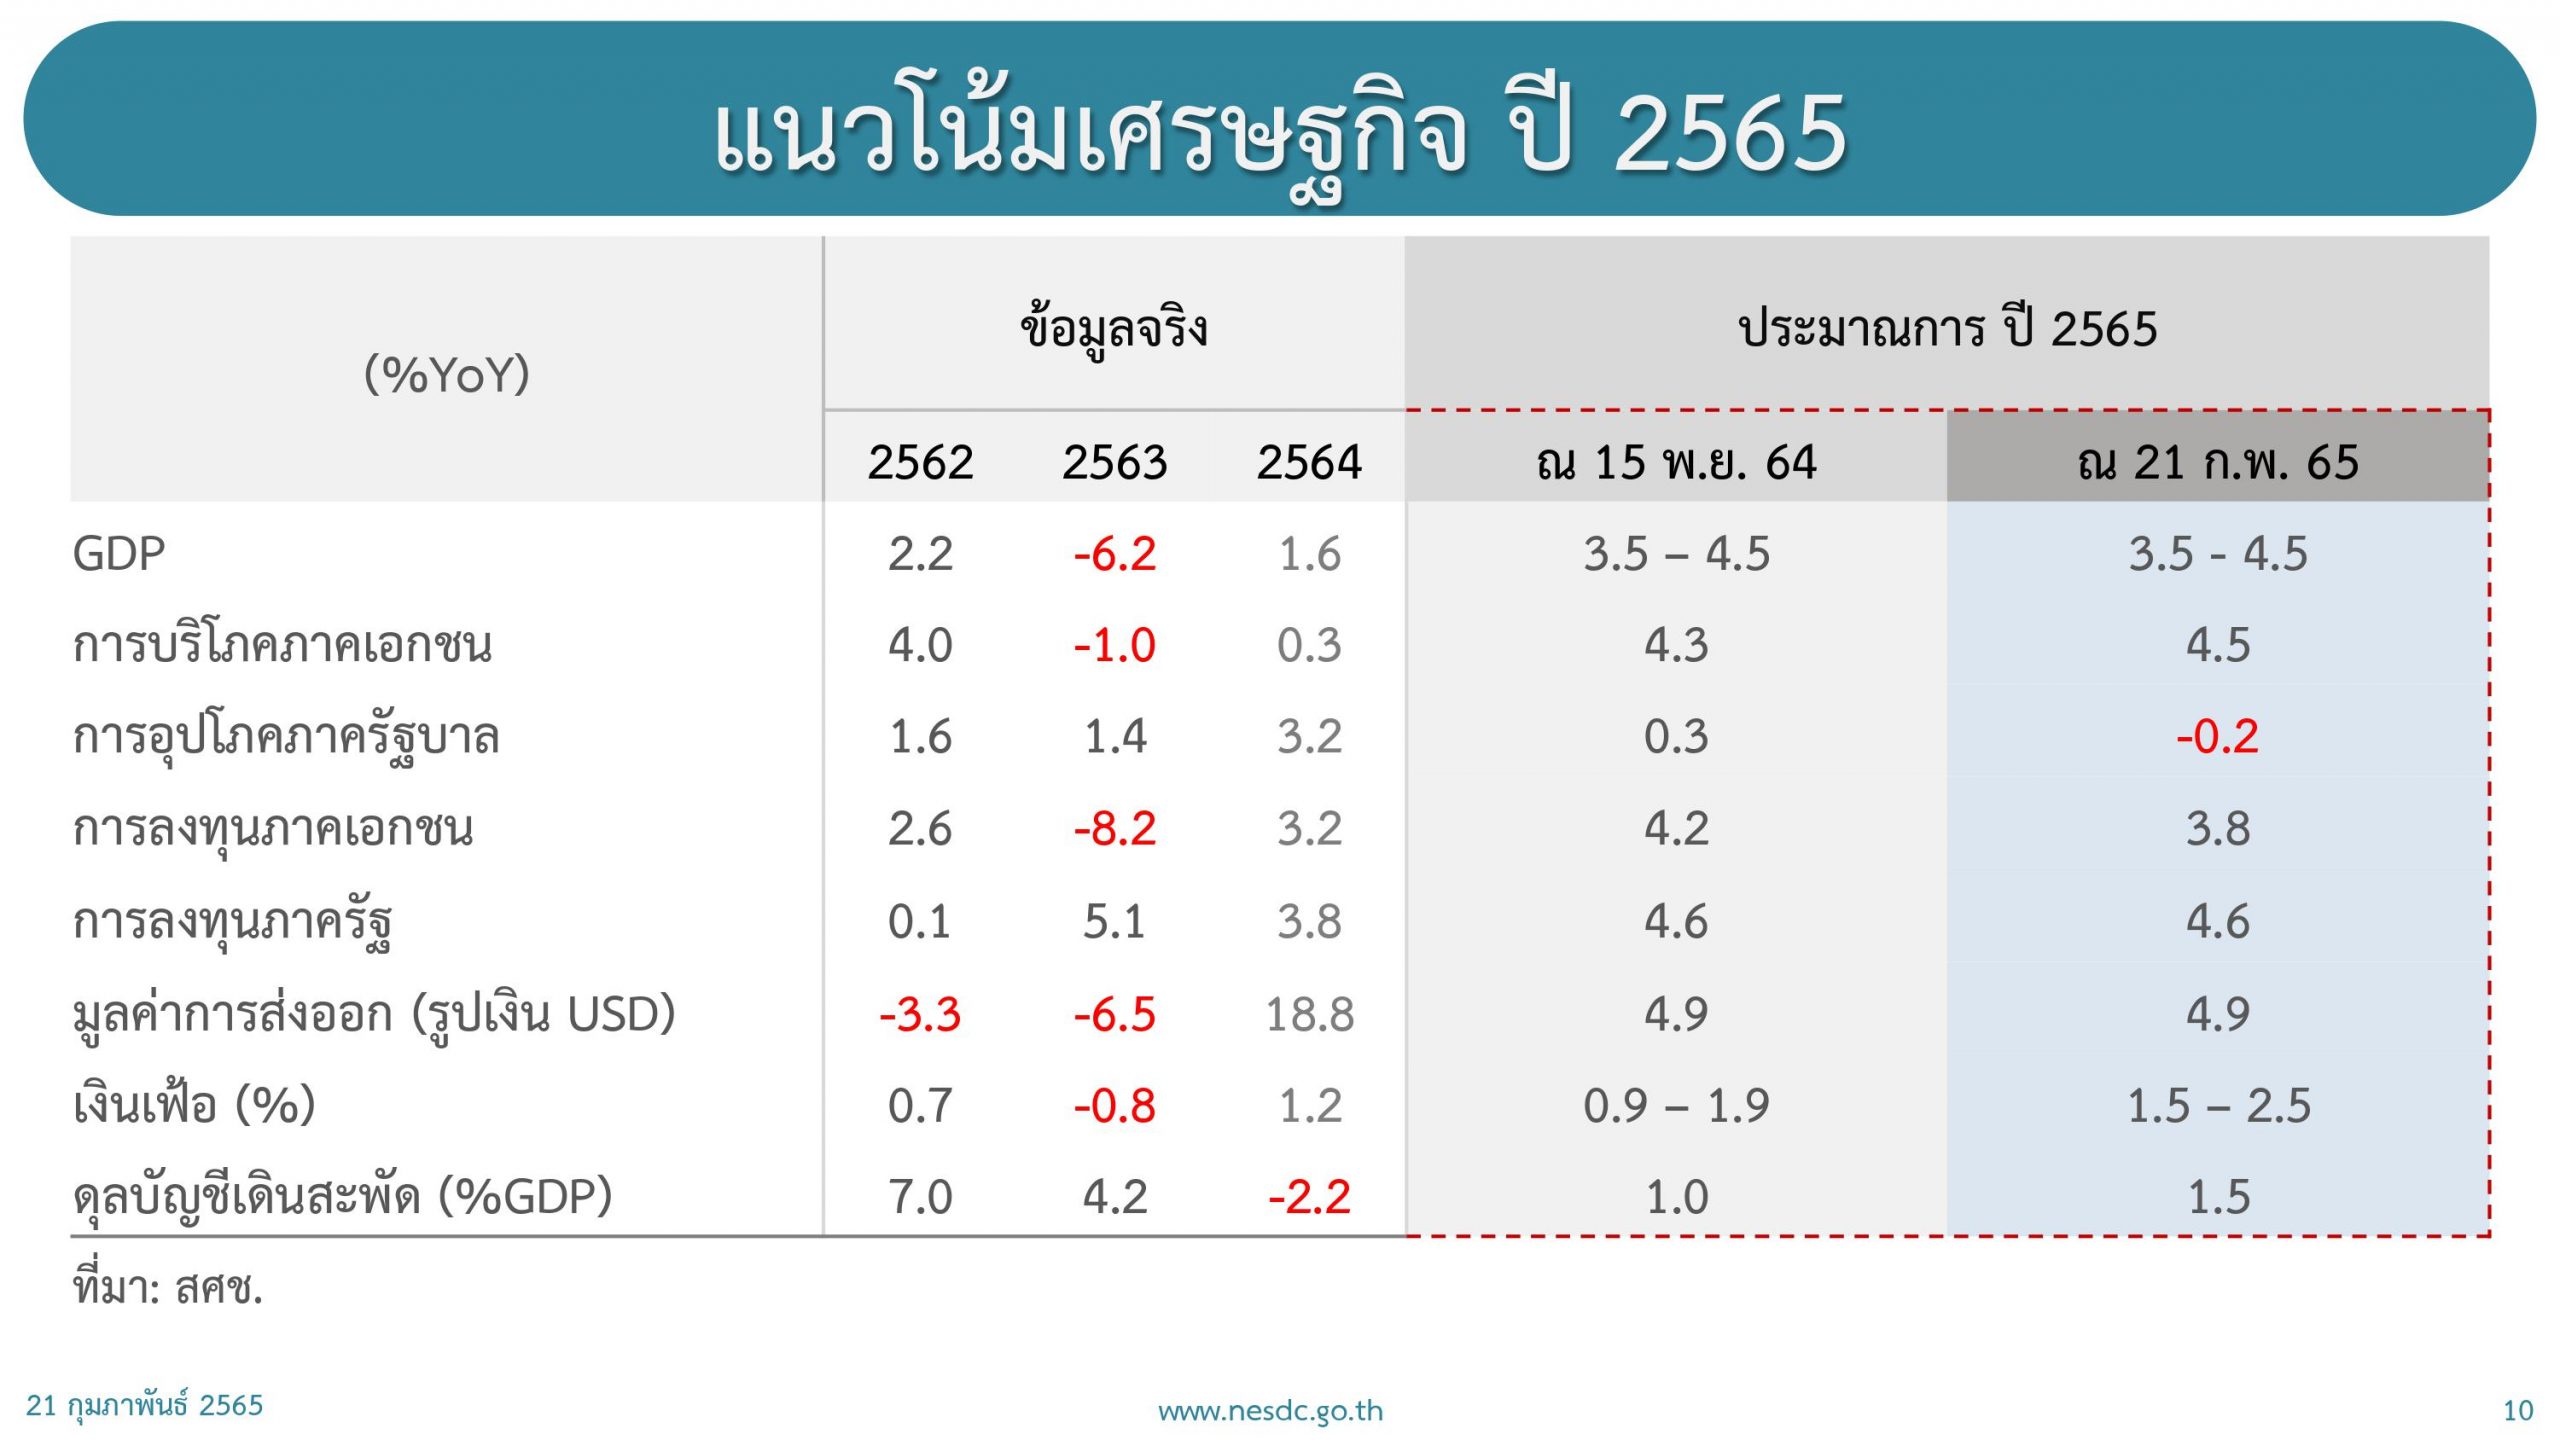 แนวโน้มเศรษฐกิจไทยปี 2565 คาดว่าจะขยายตัวในช่วง 3.5 – 4.5%